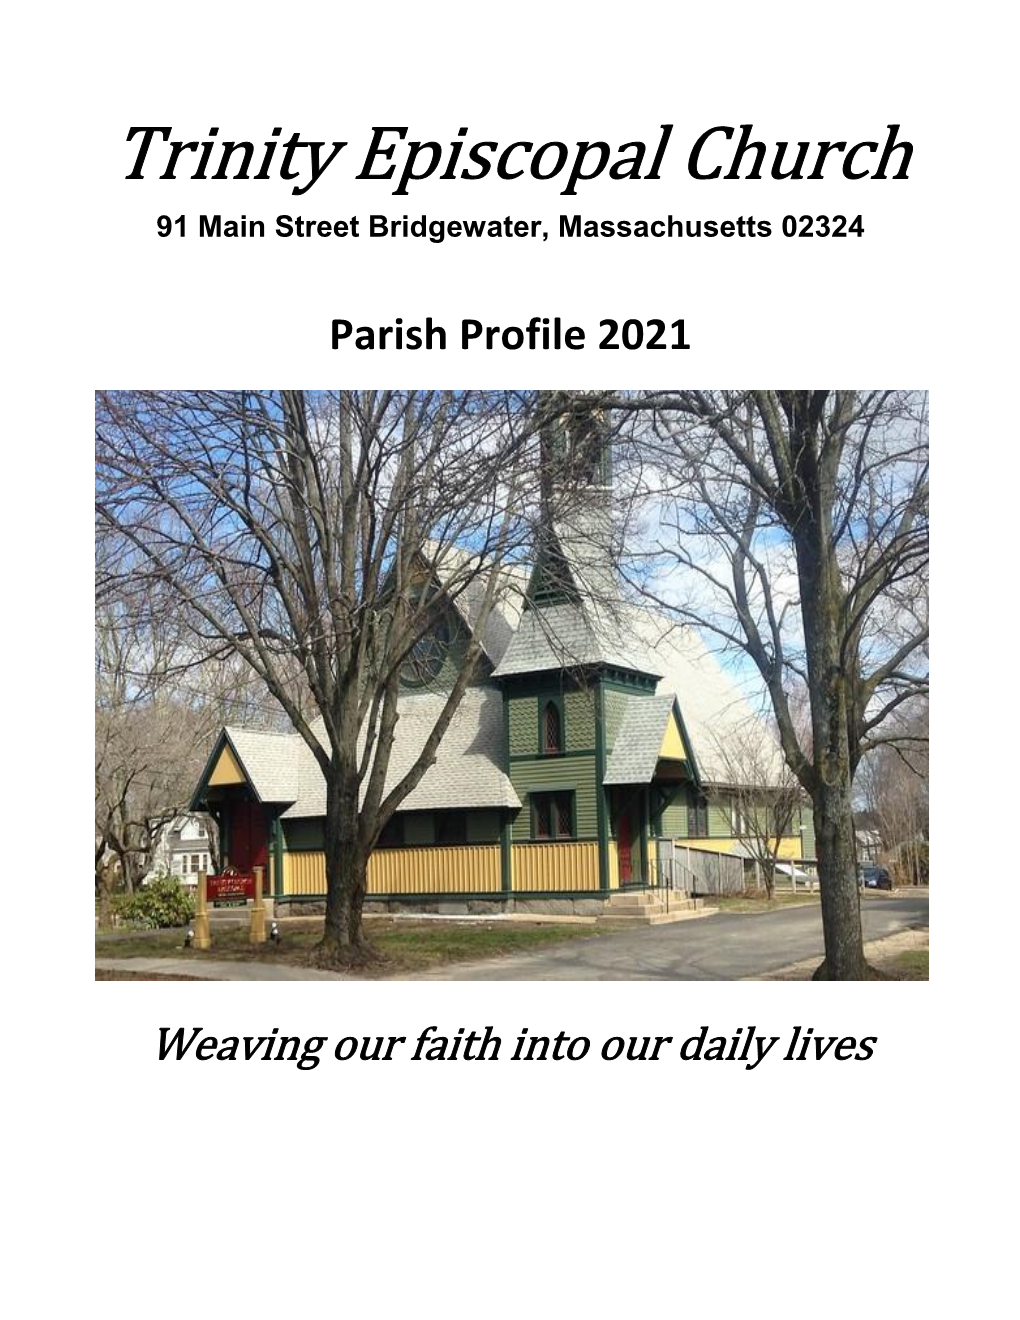 Trinity Episcopal Church 91 Main Street Bridgewater, Massachusetts 02324